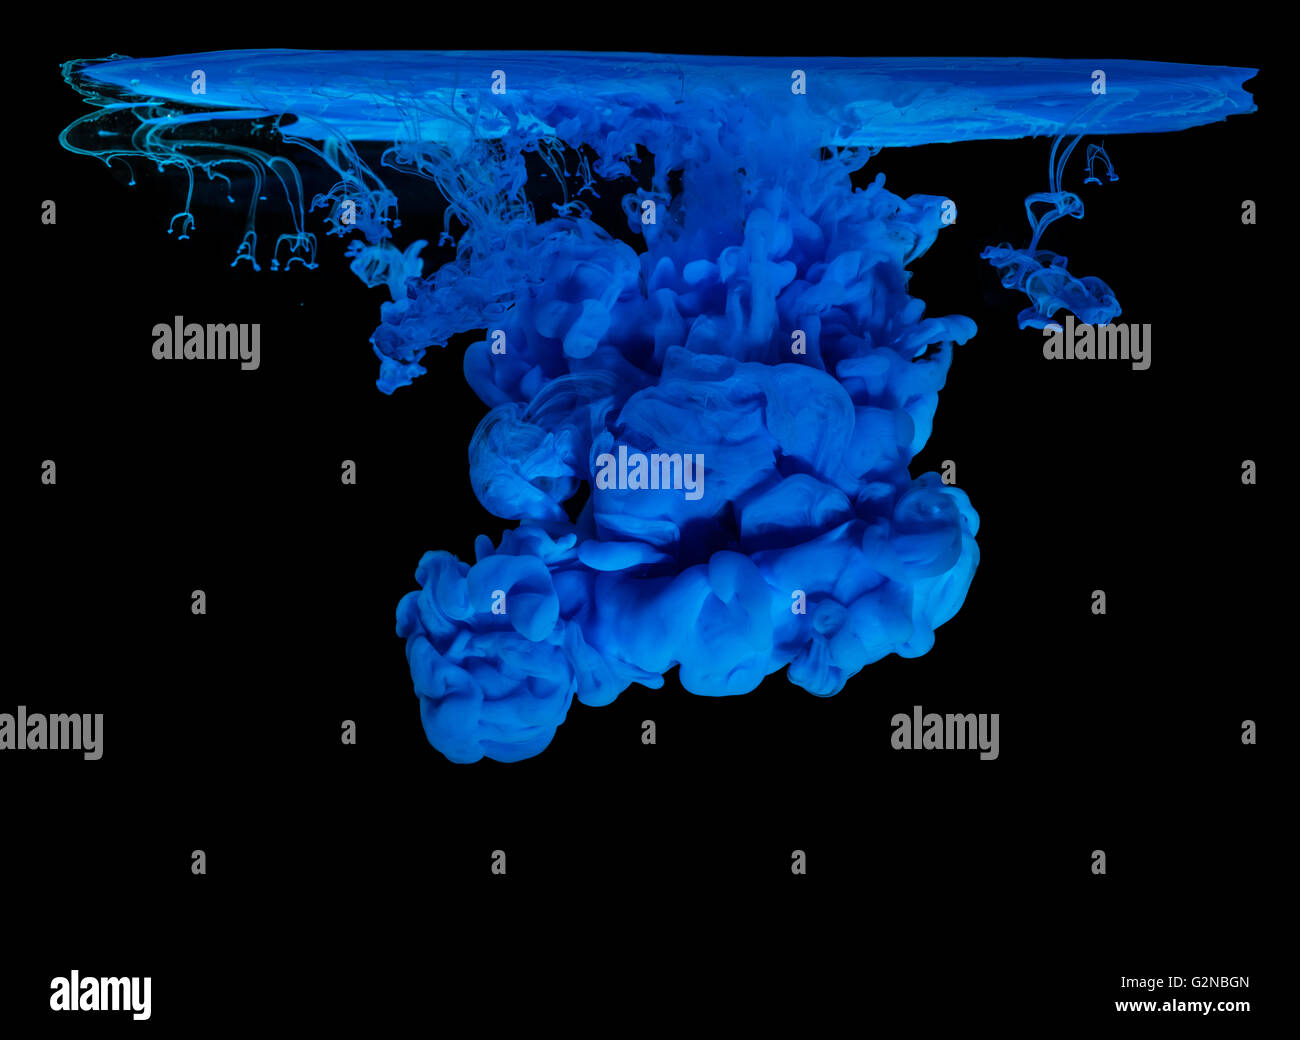 Inchiostro blu in acqua creazione astratta Shape, isolati su sfondo nero Foto Stock